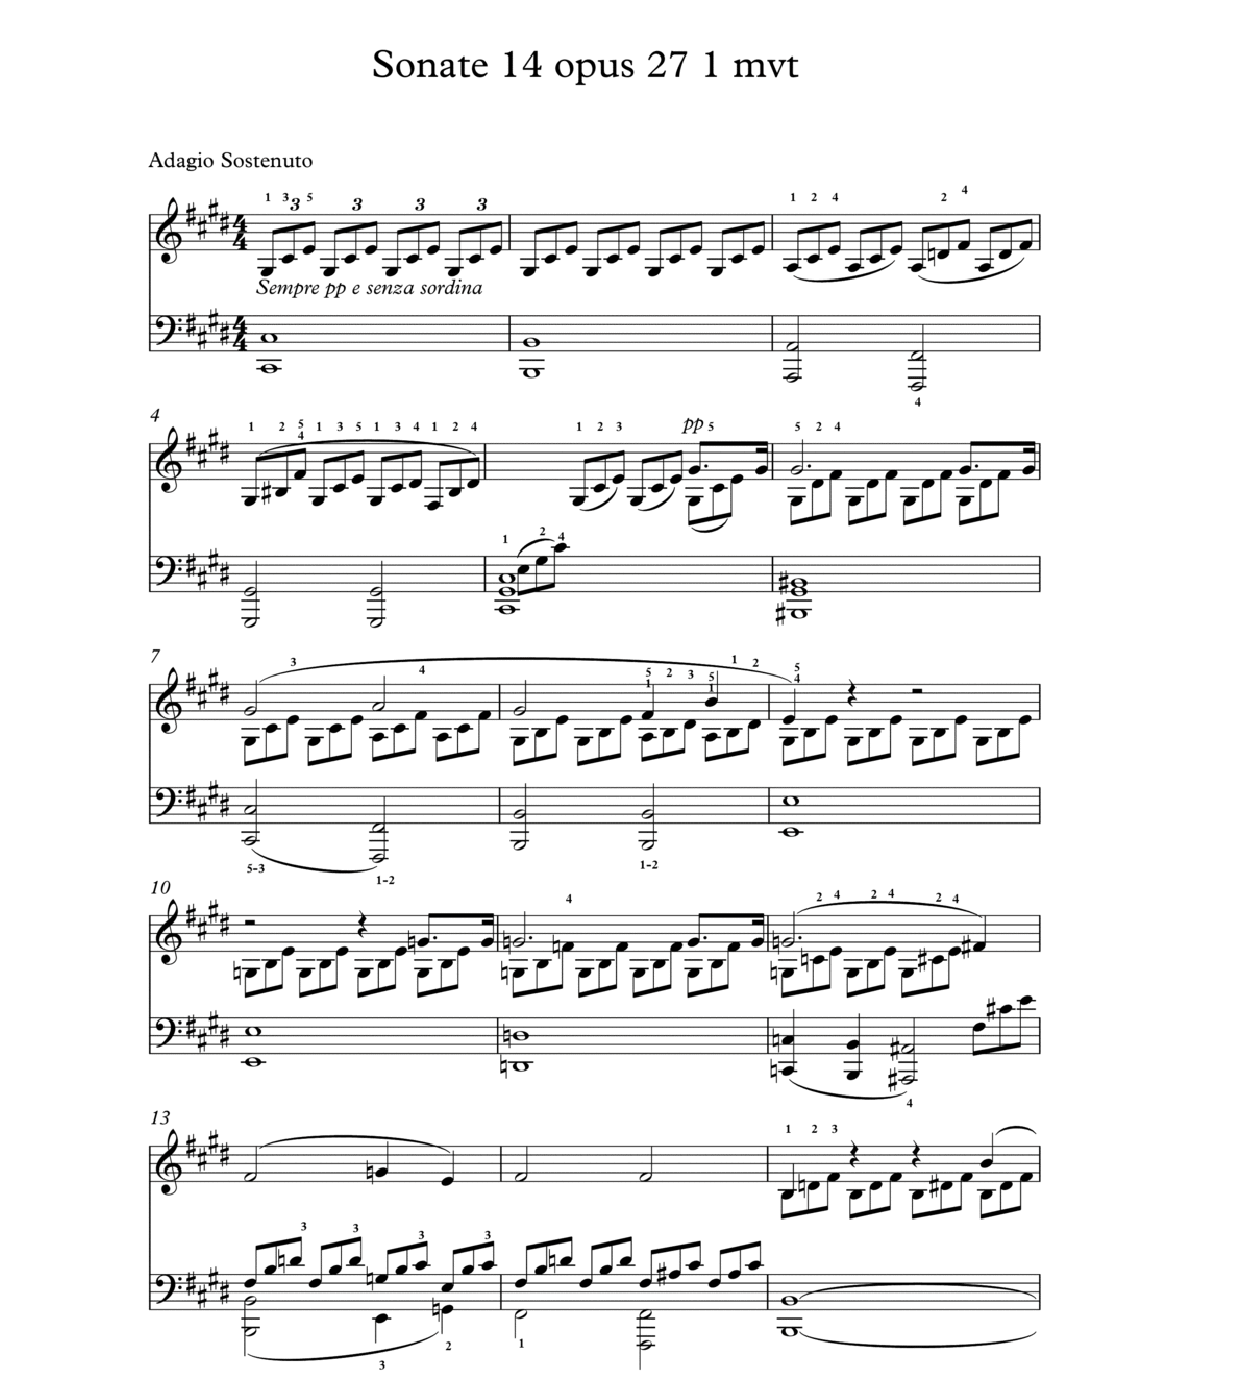 Sonate Au Clair De Lune Partition De Piano A Telecharger